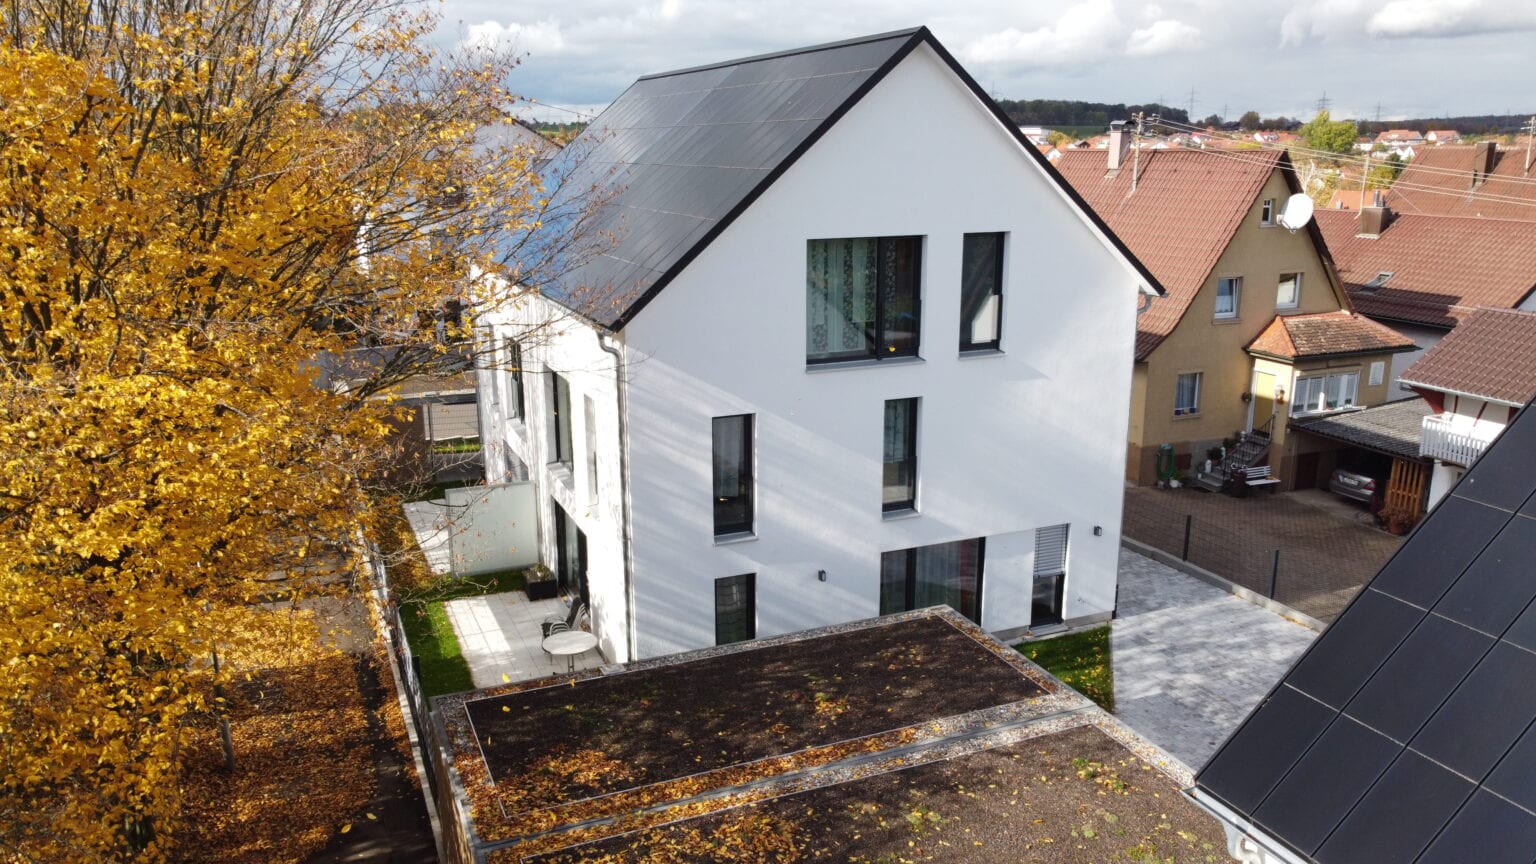 Ennogie-Solardach in Freiberg: Eine vollflächige Dachfläche belegt mit Ganzdachlösung für Photovoltaik zu erkennen, Baum in Vordergrund